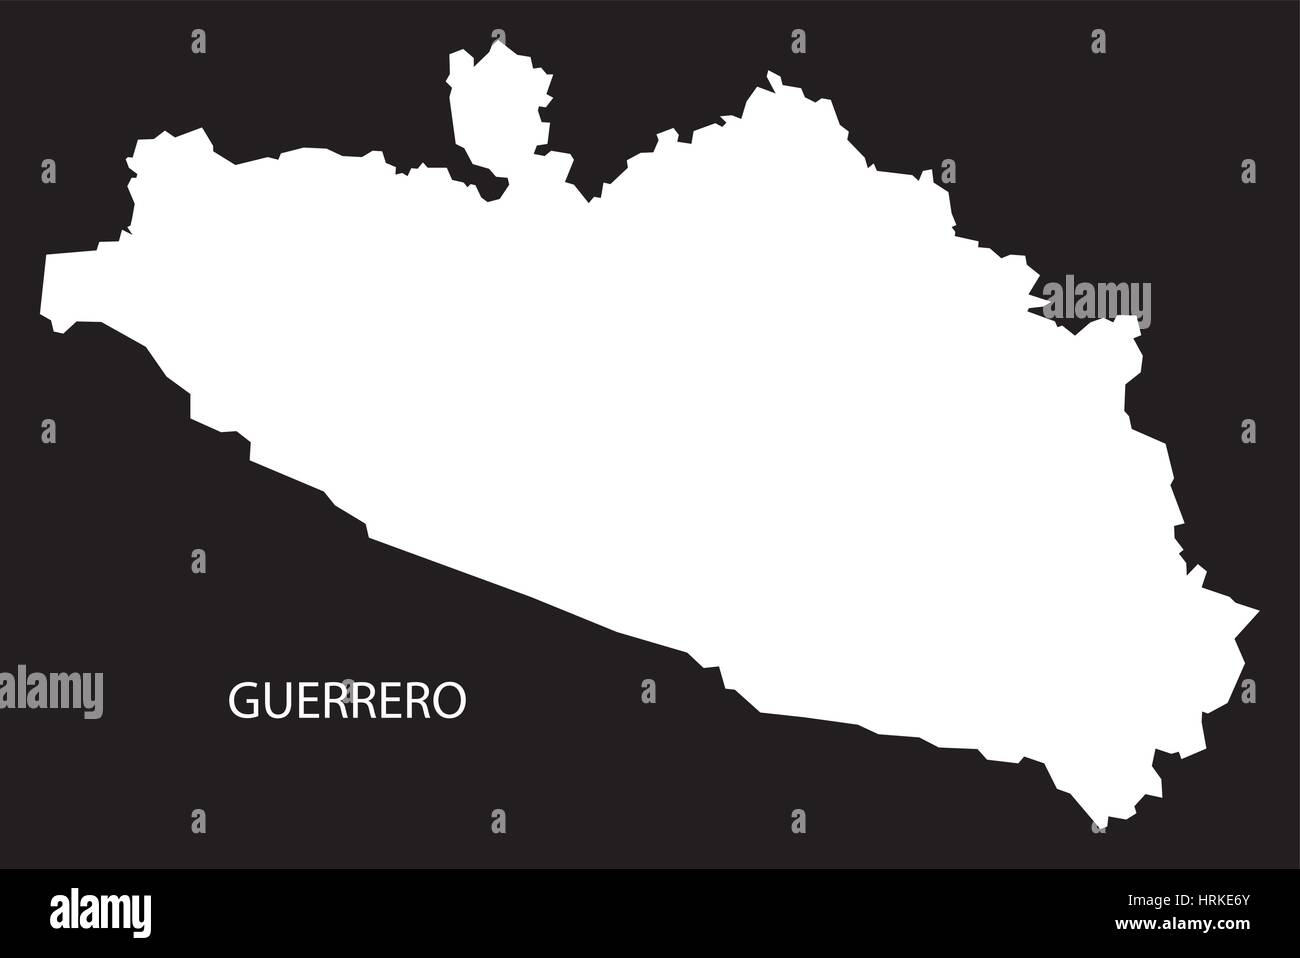 Guerrero Mexiko Karte schwarz invertiert silhouette Stock Vektor